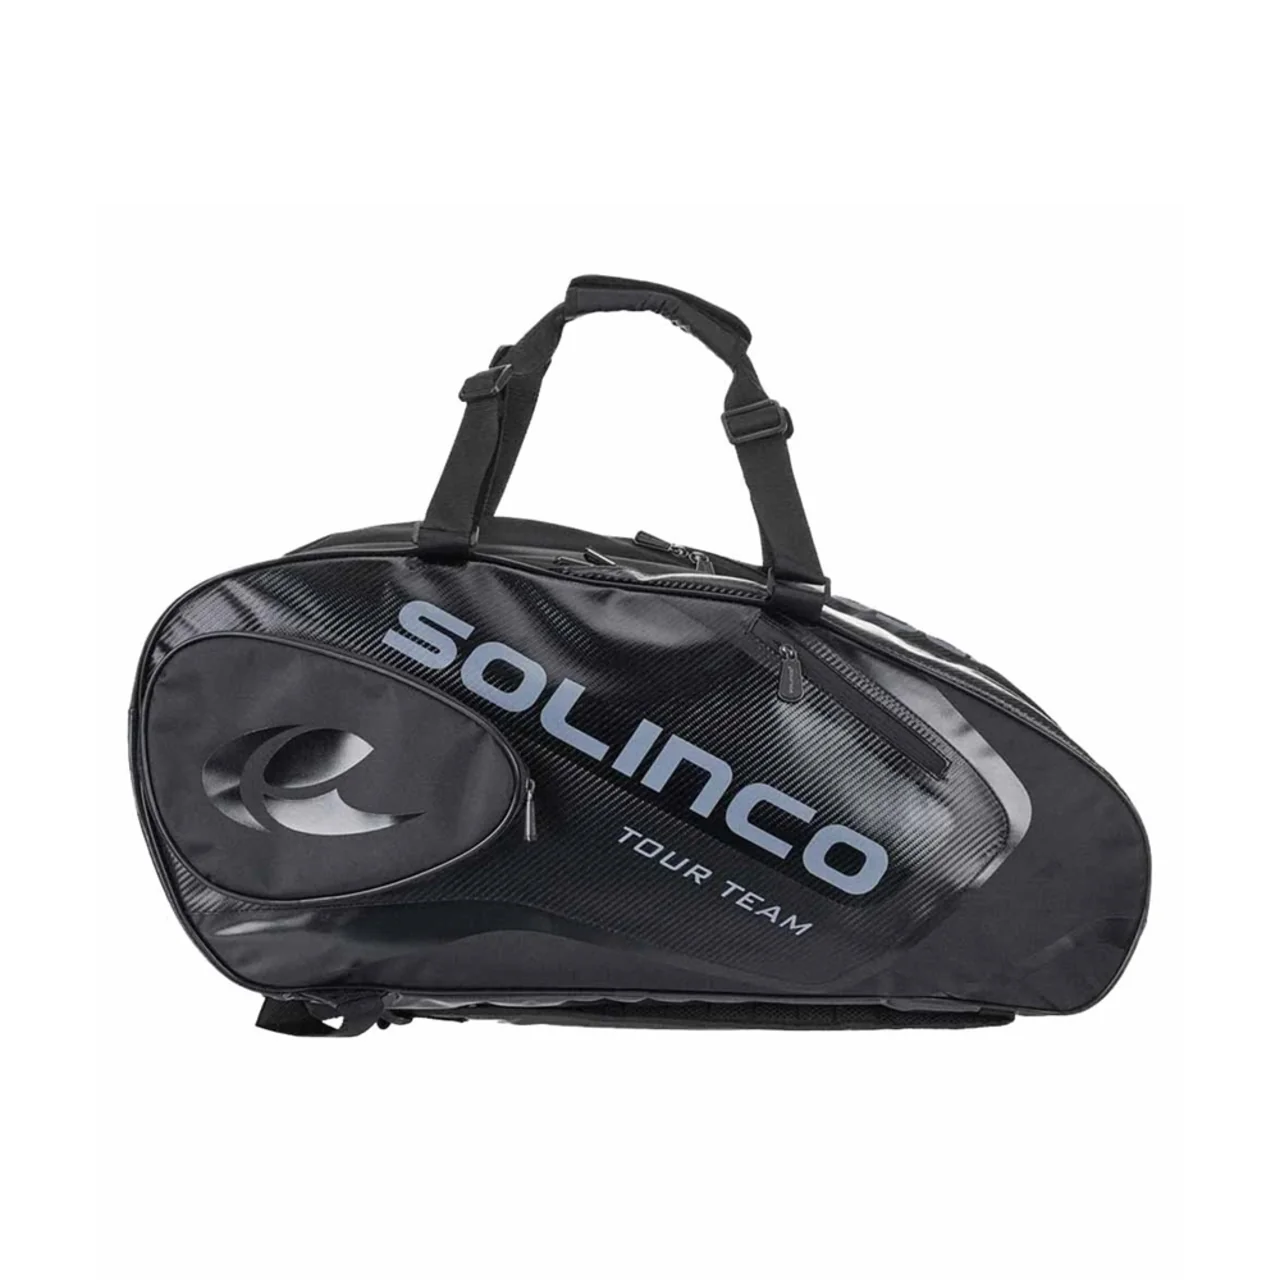 Solinco Tour Bag 6-pack Blackout